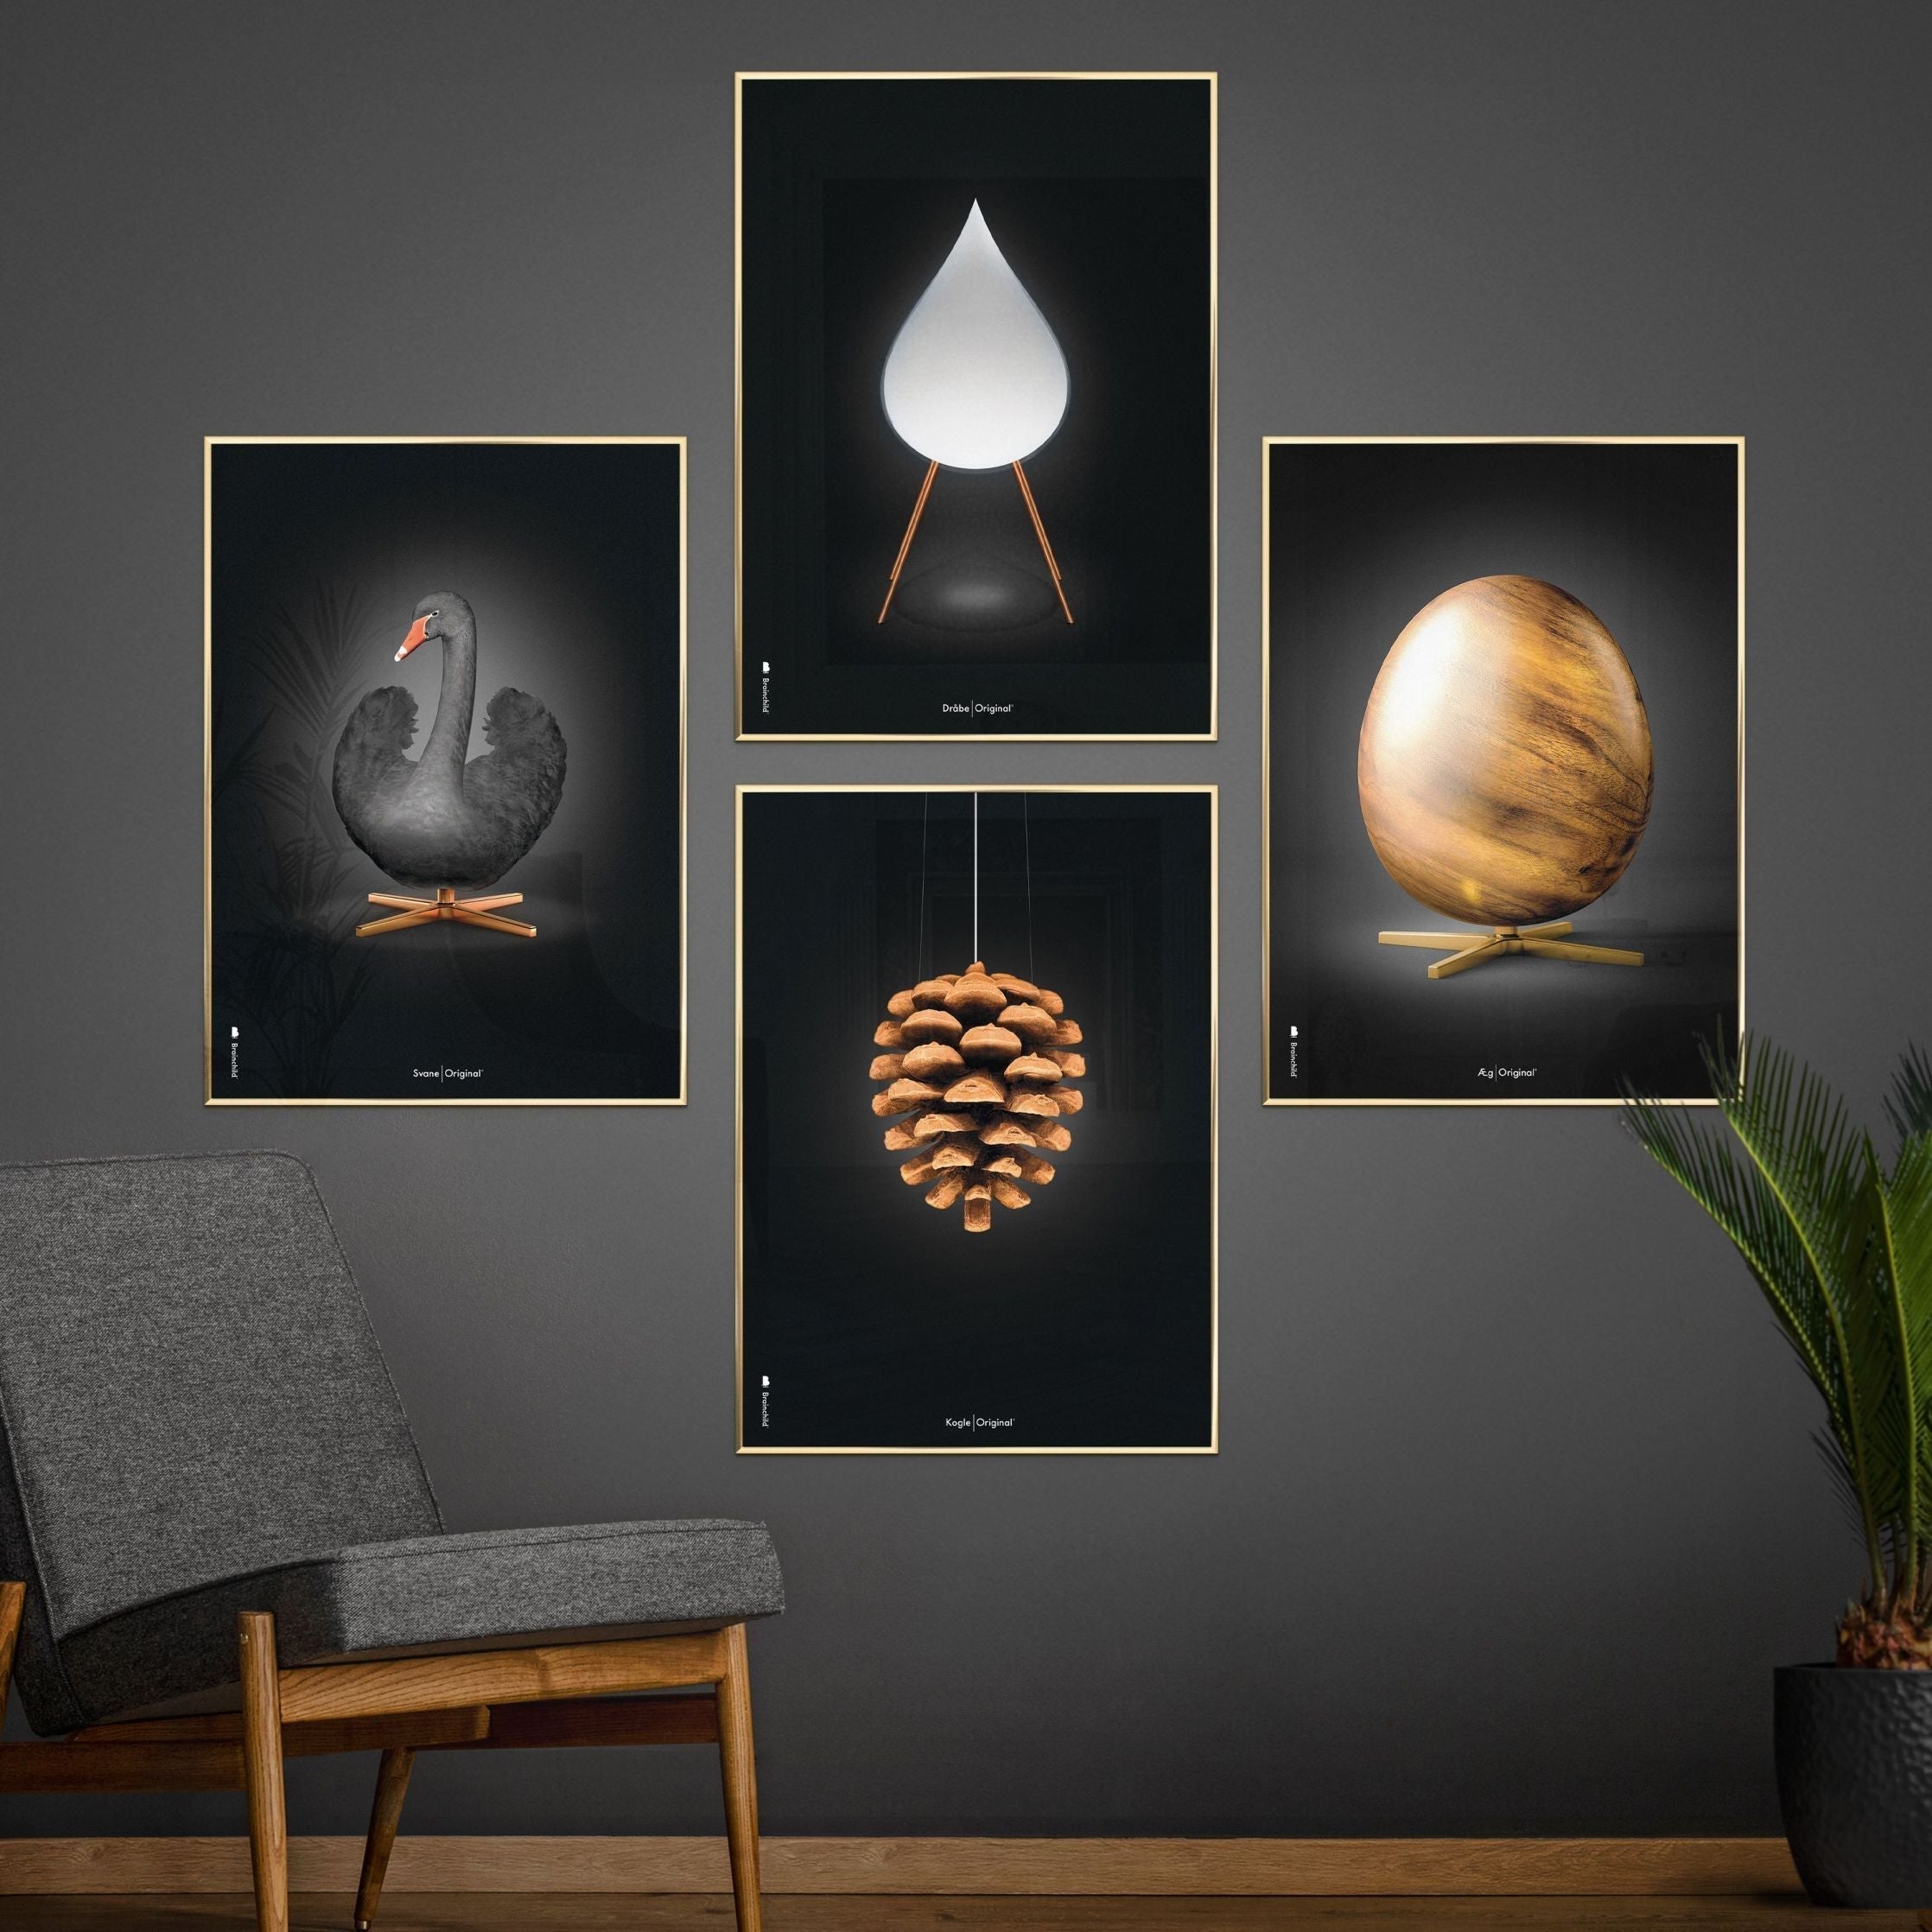 Poster di figure di uova di prima cosa, telaio in legno chiaro 30x40 cm, nero